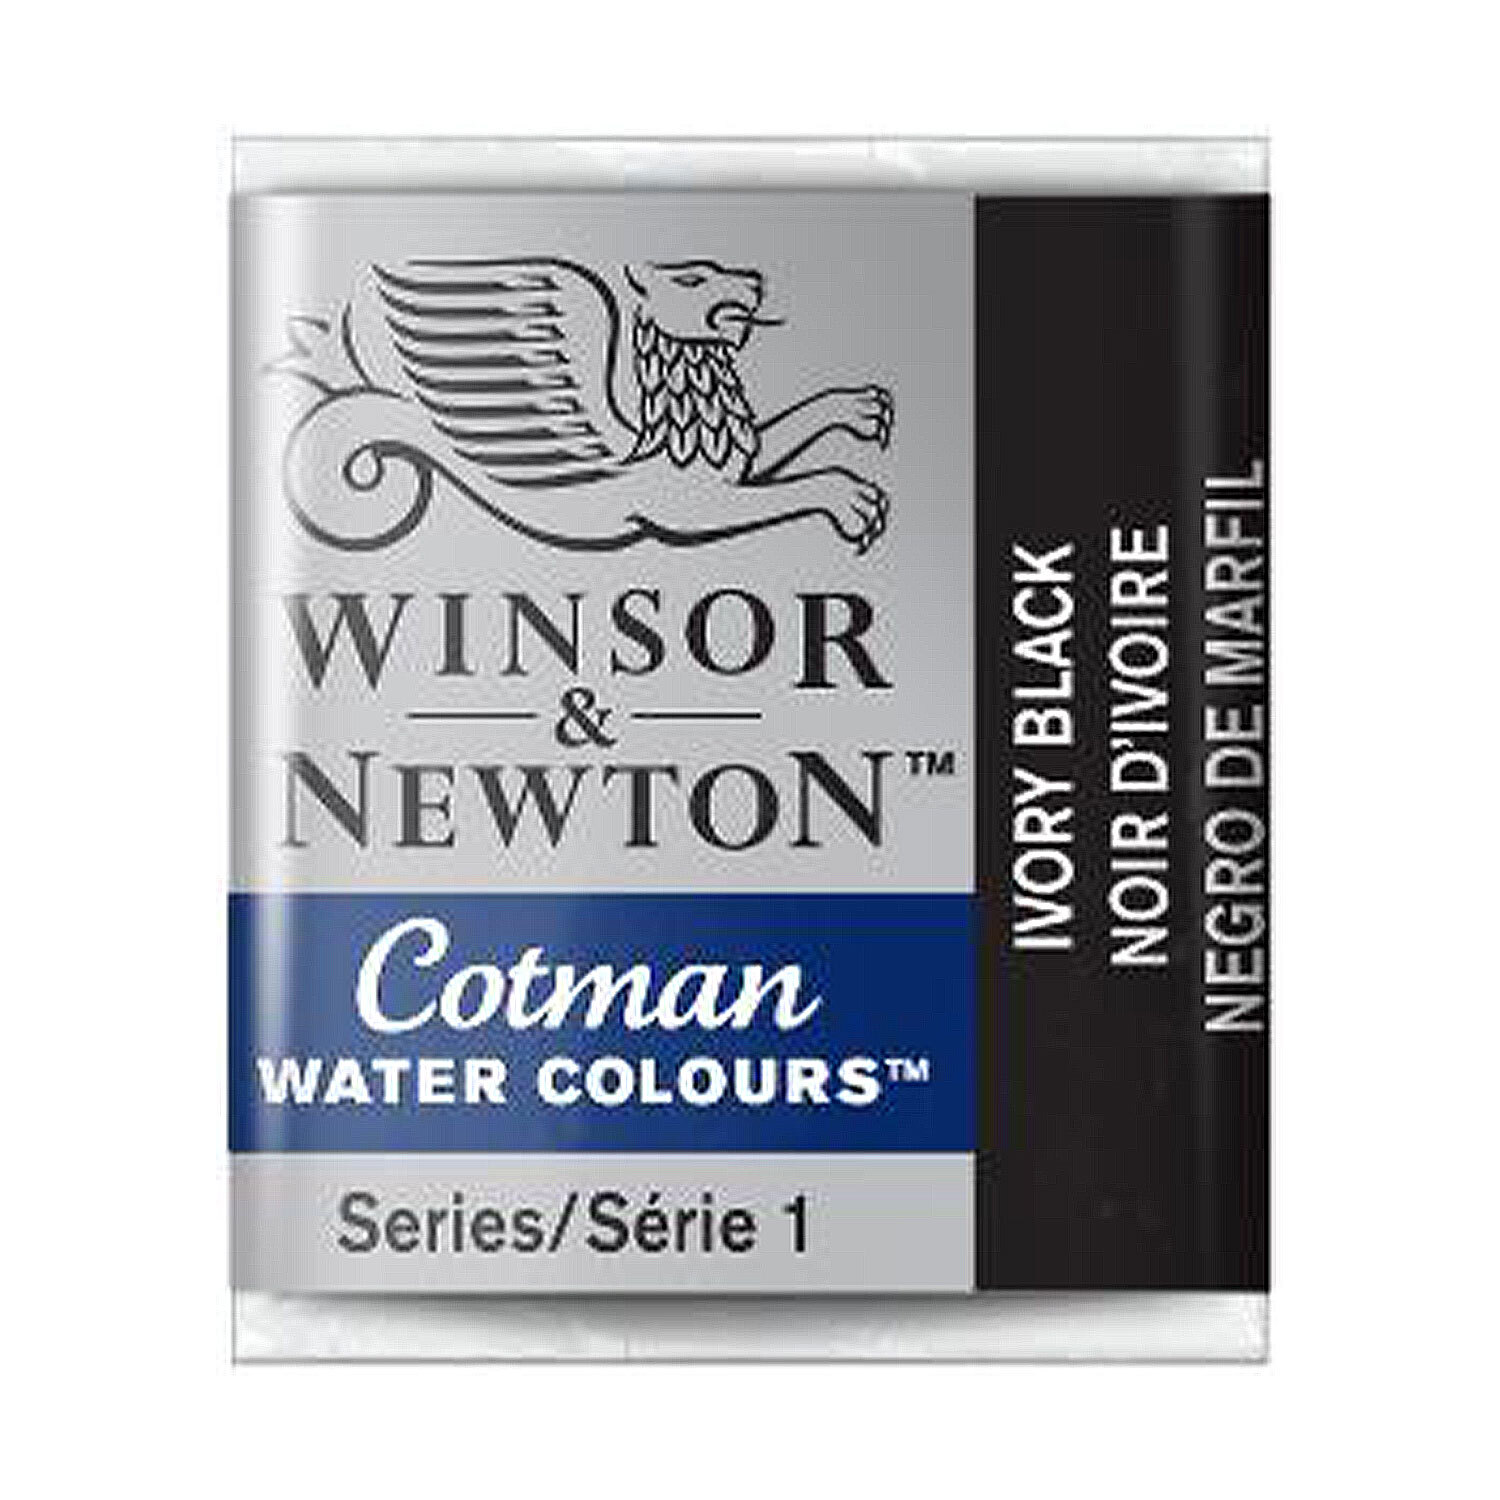 Winsor & Newton Cotman Watercolour Cotman Half Pan Watercolour Paint - Ivory Black Image